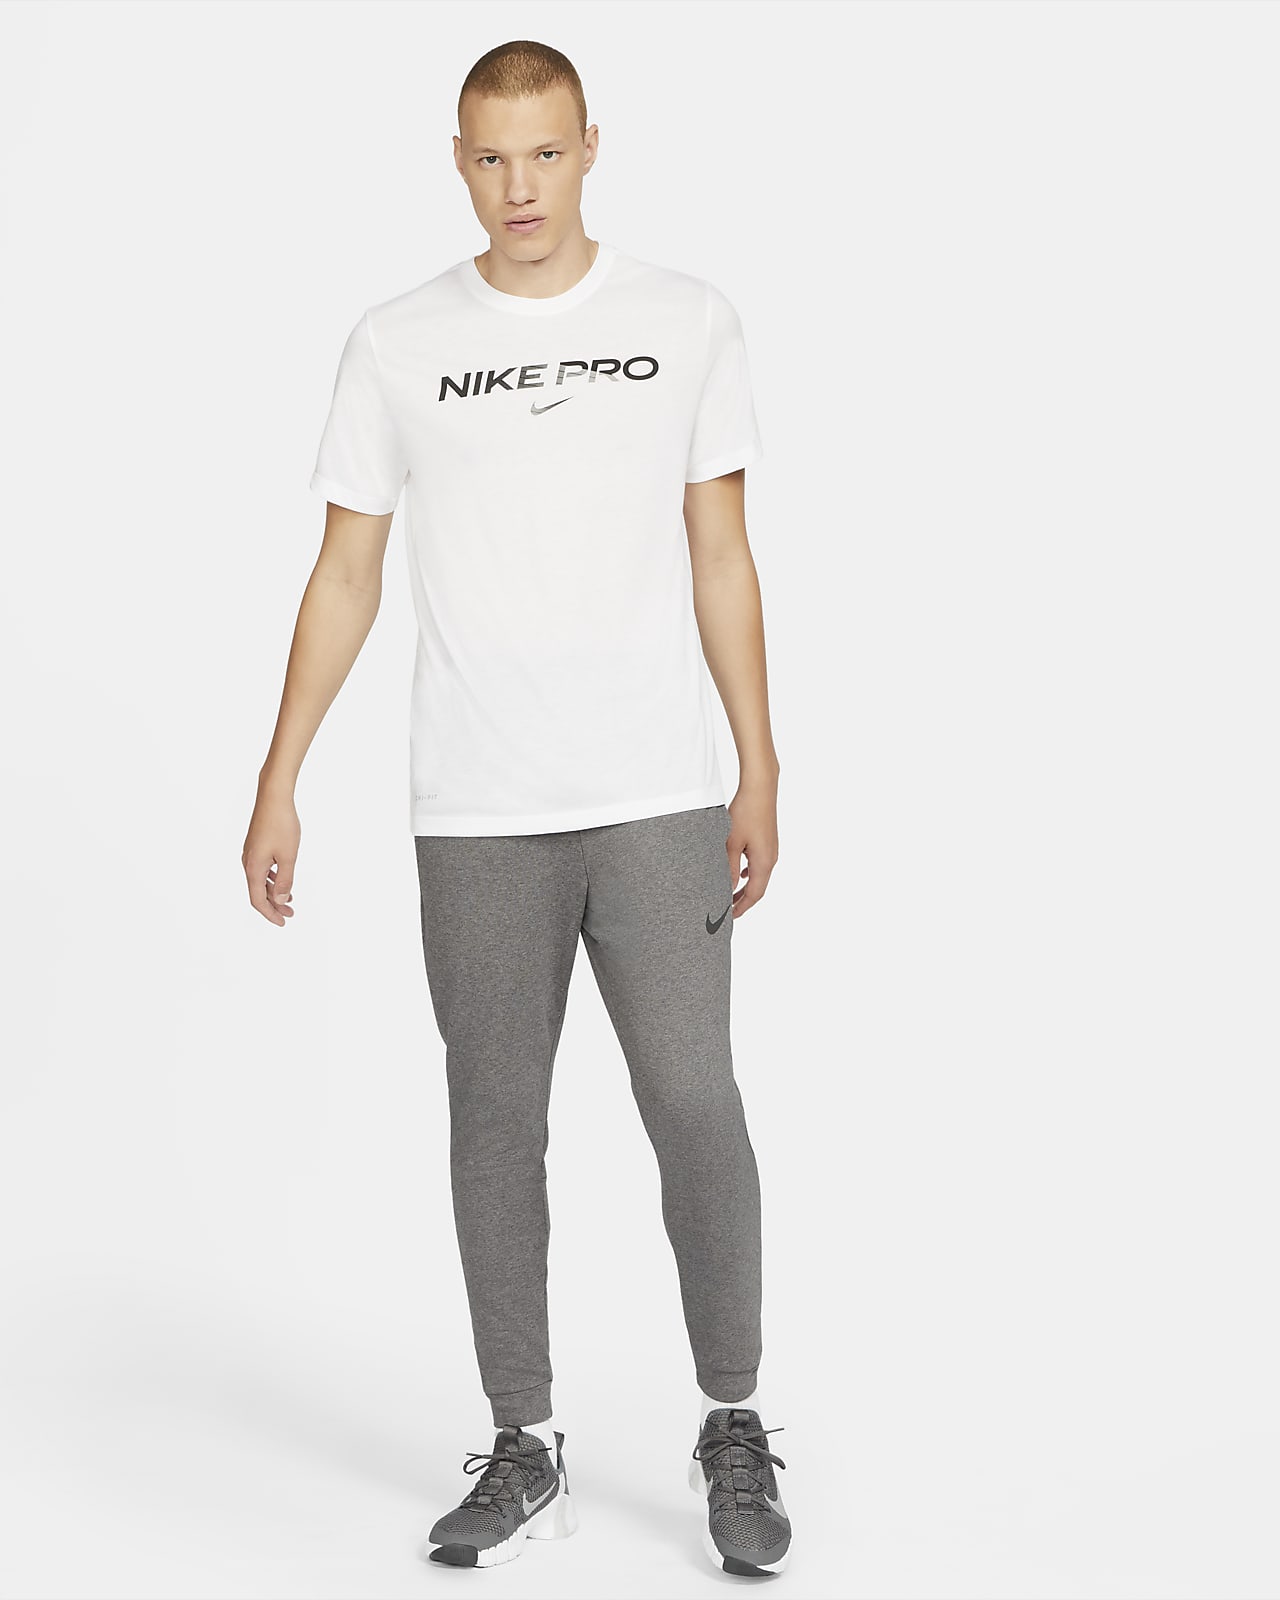 Mens Nike Pro Dri-FIT Clothing.